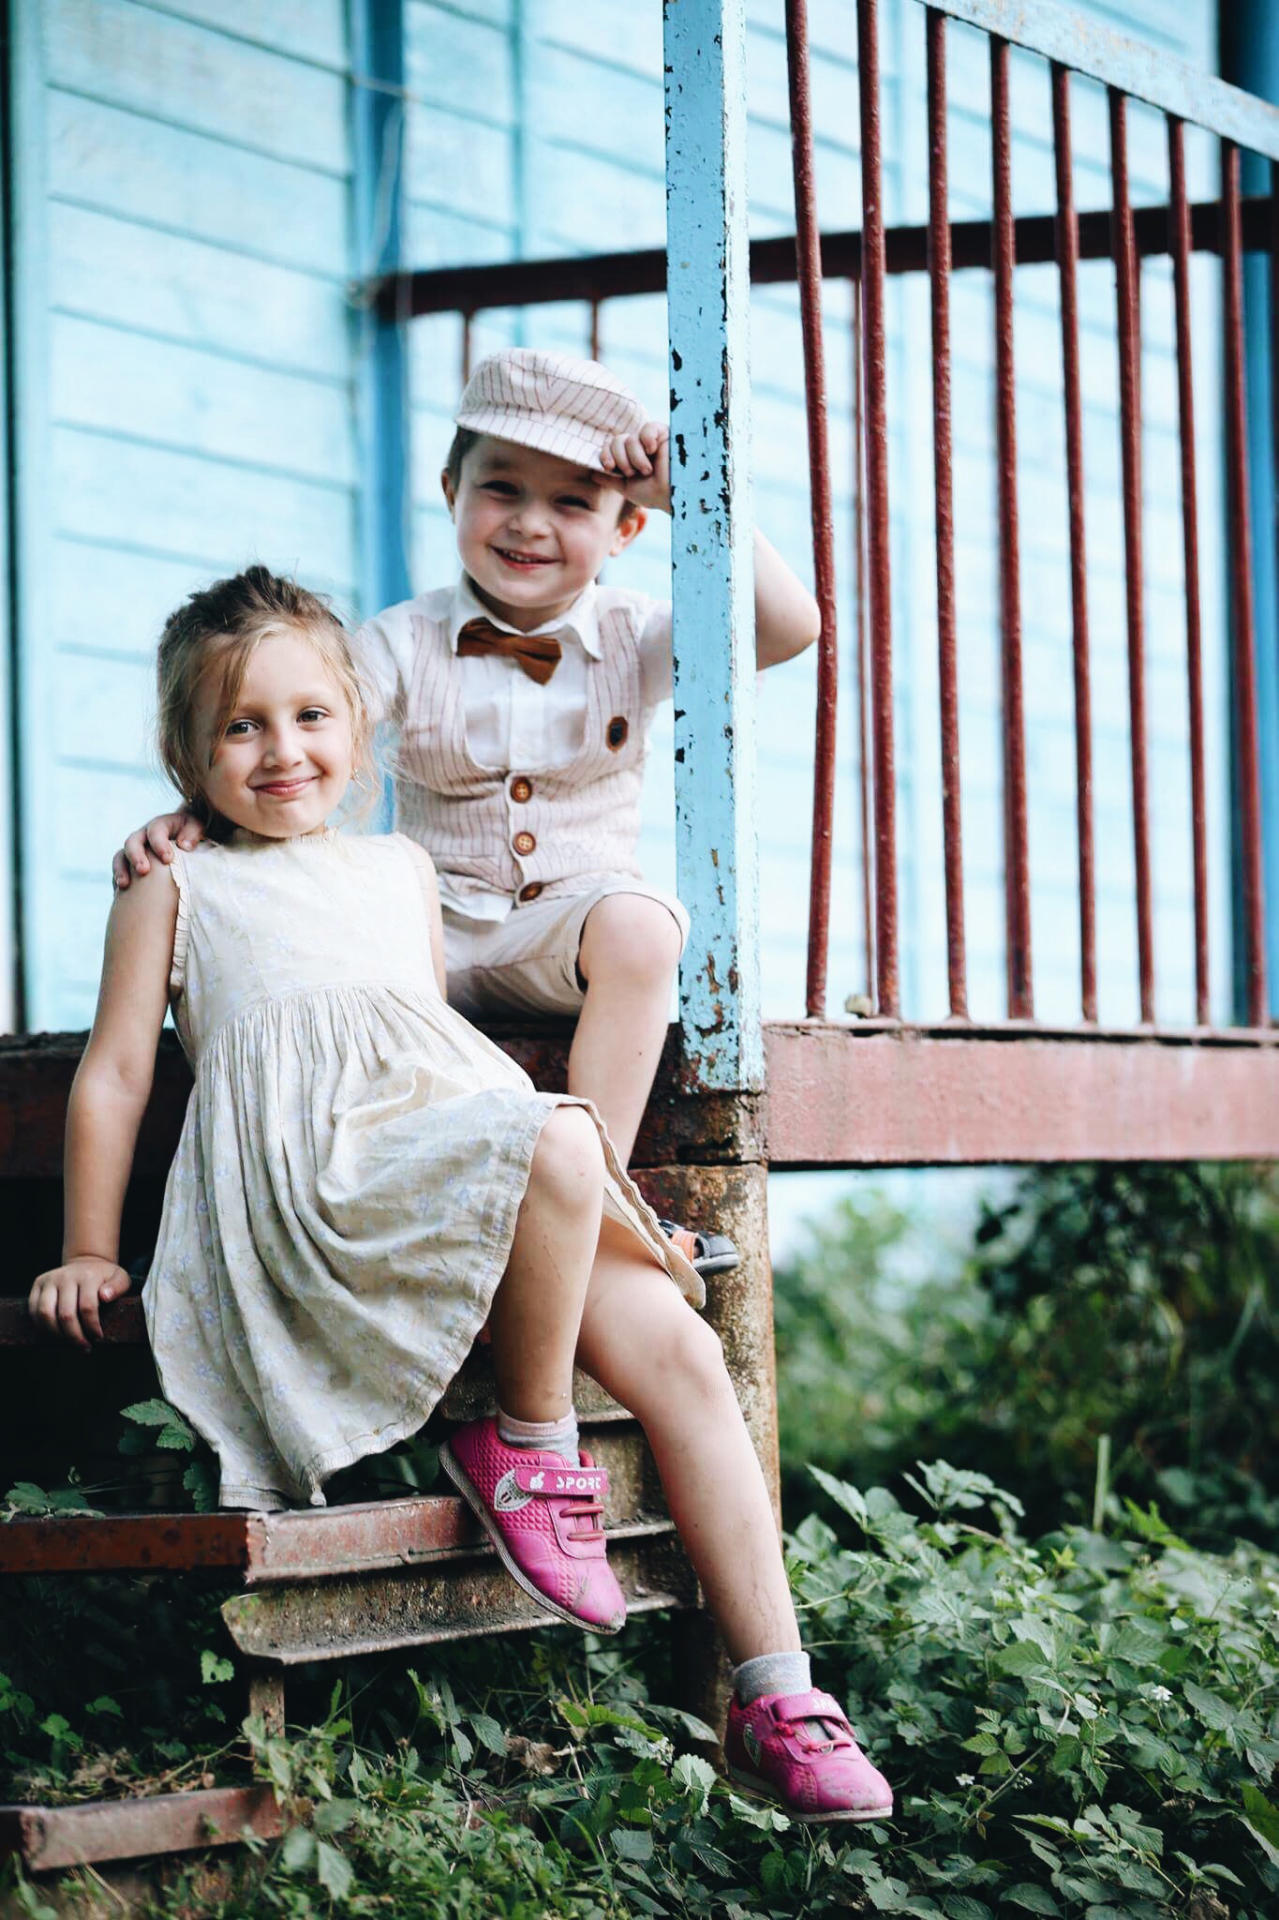 Дети, мода, история – новый проект азербайджанского фотографа (ФОТО)